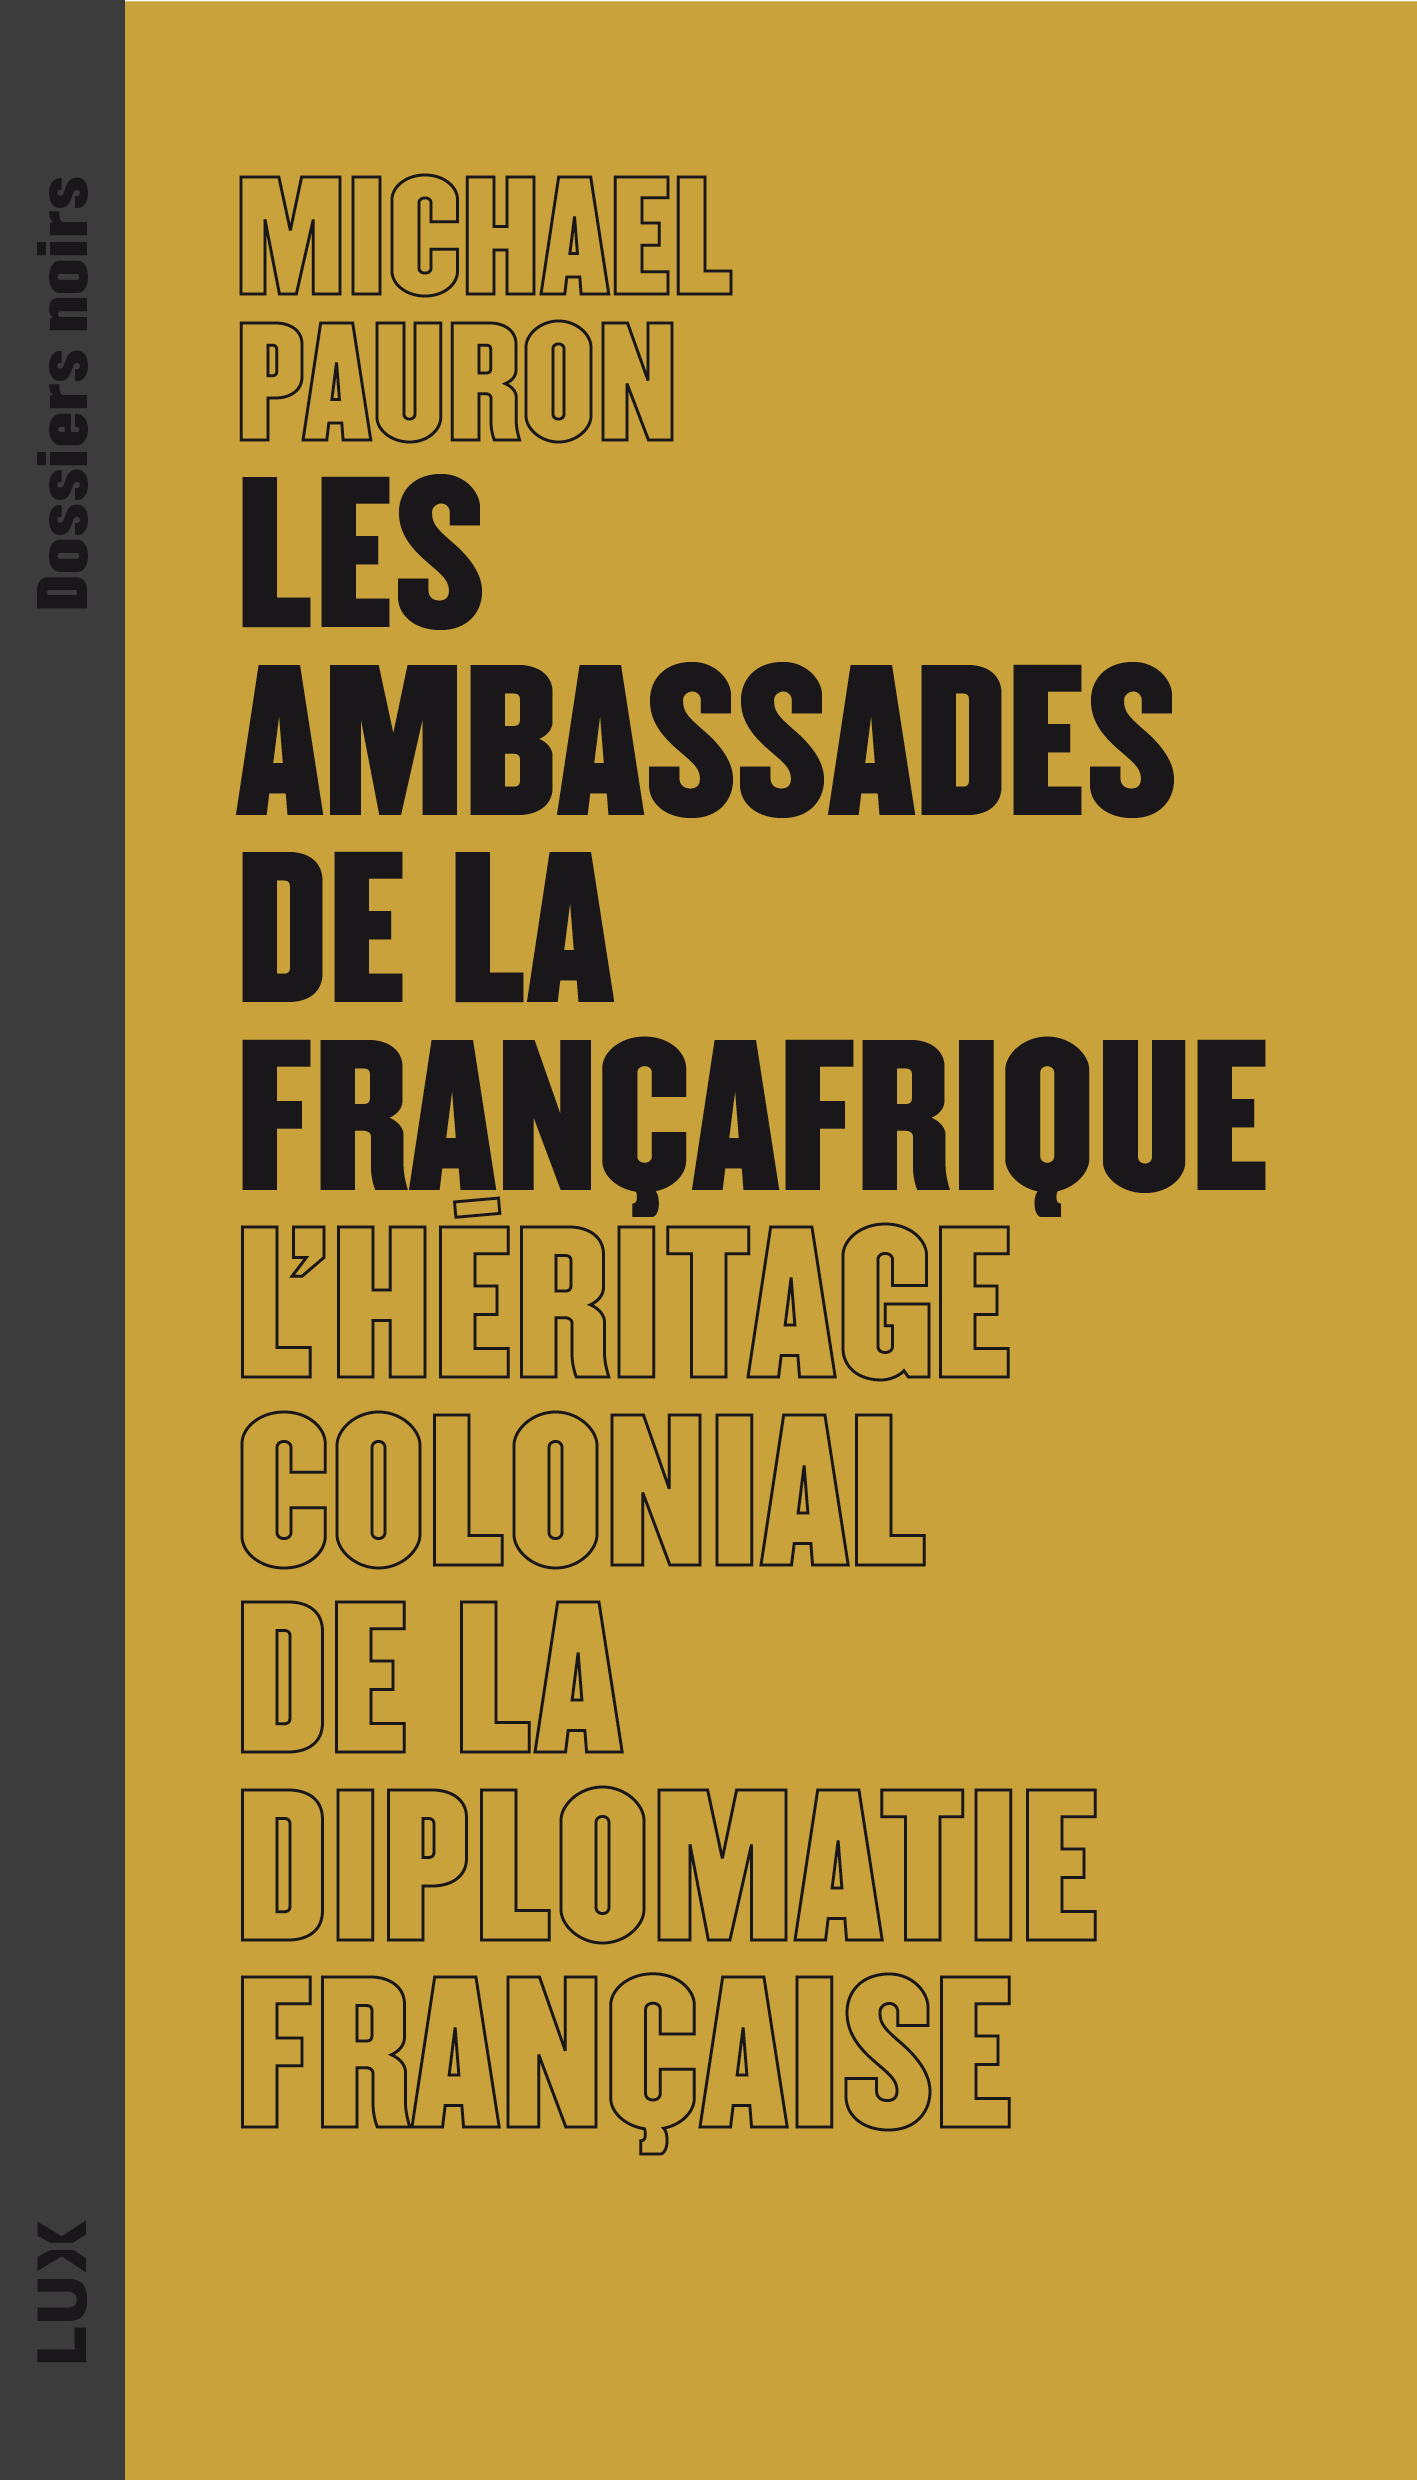 ambassades-francafrique-temp